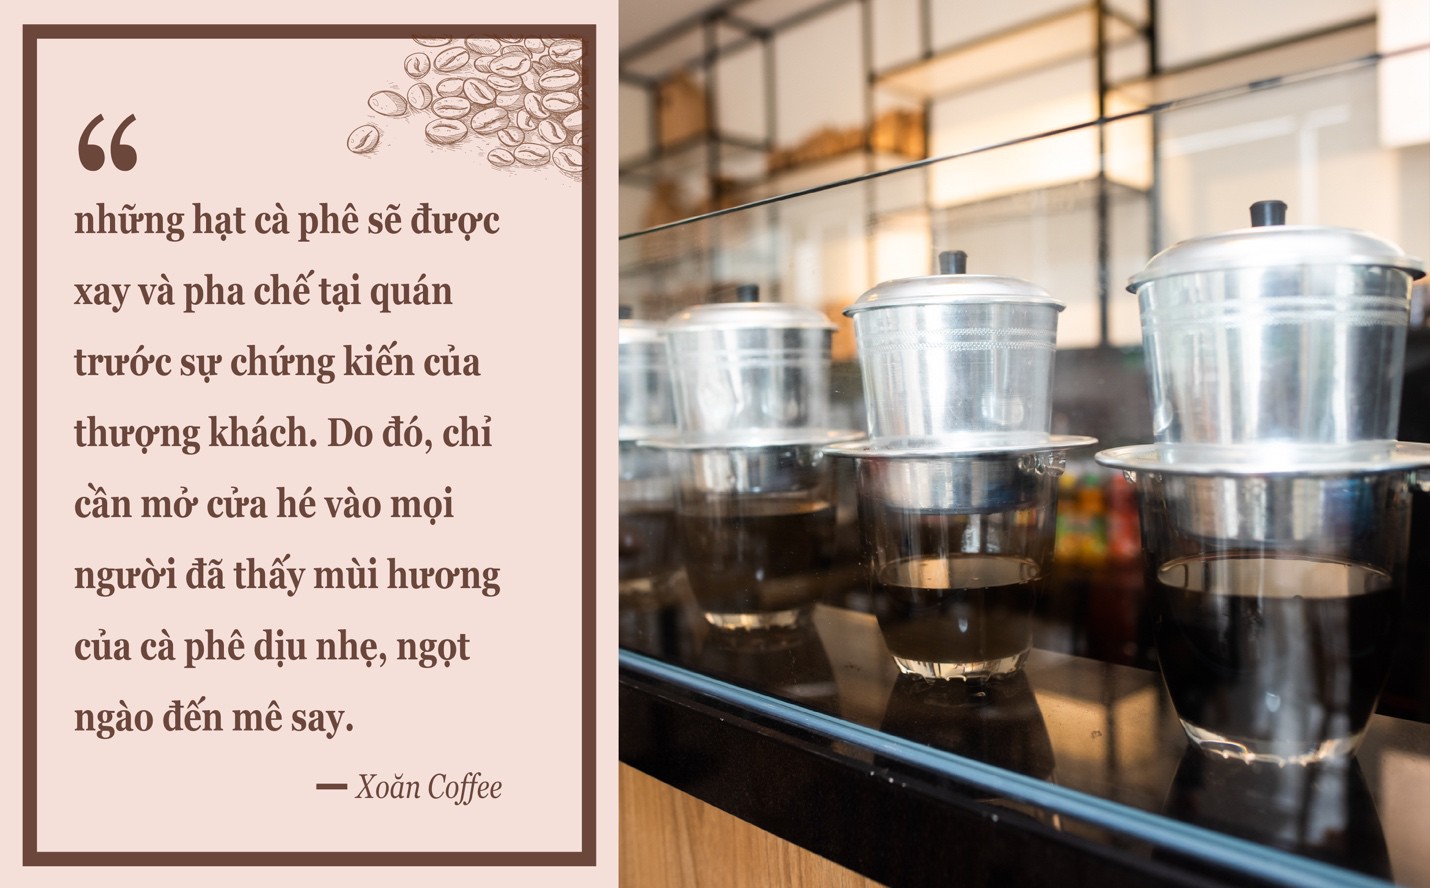 Xoăn Coffee: Quán cà phê mang trọn hương vị mảnh đất cao nguyên xuống Sài Gòn sôi động - Ảnh 3.